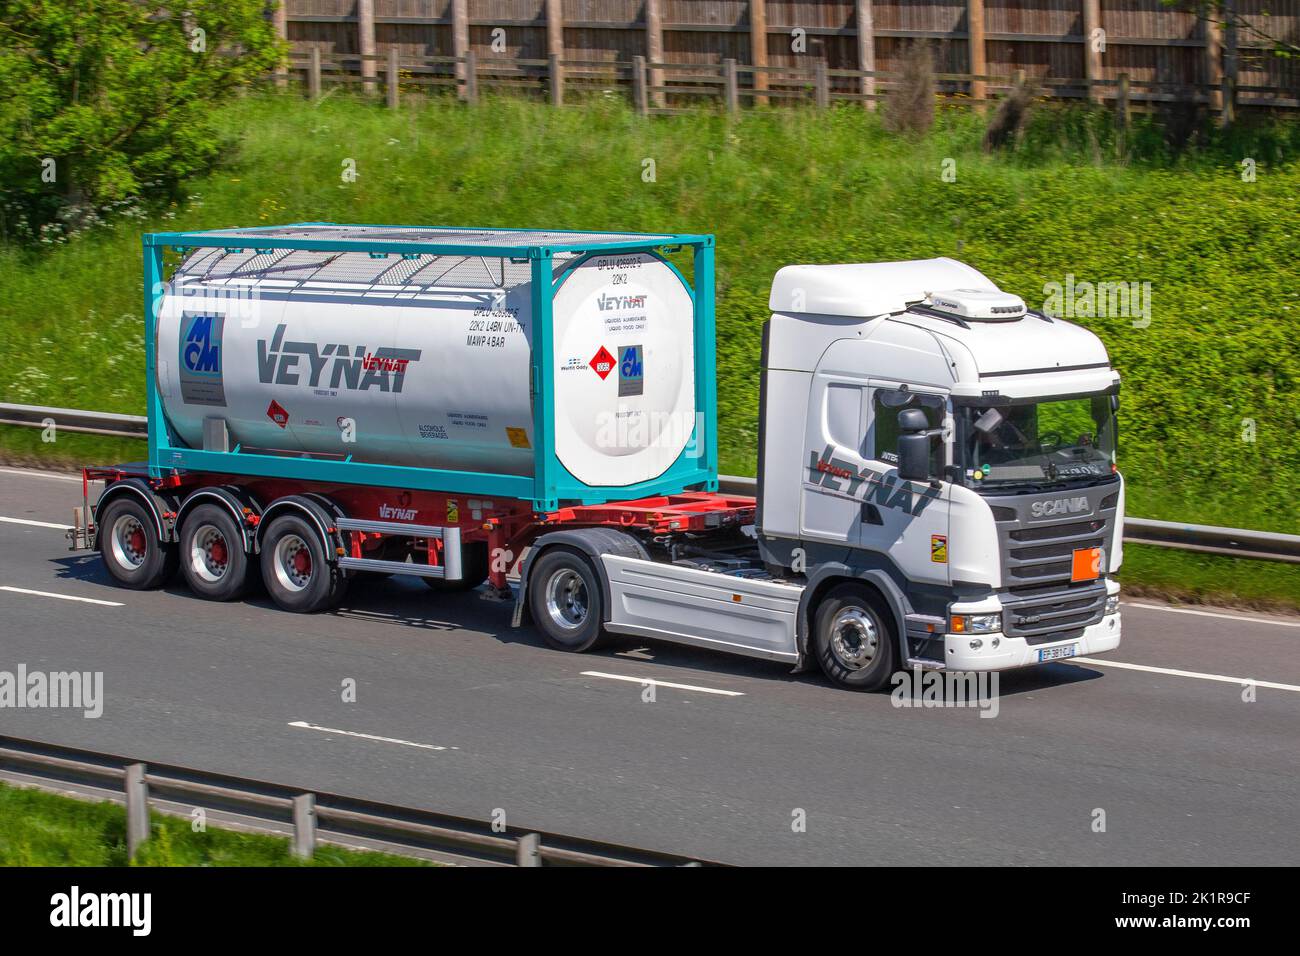 Transports Veynat, entreprise française de transport de marchandises par camion de produits alimentaires liquides HGV; camions de livraison de transport, camion, véhicules lourds, transport, Camion, porte-bagages, véhicule, industrie européenne du transport commercial HGV, M6 à Manchester, Royaume-Uni Banque D'Images